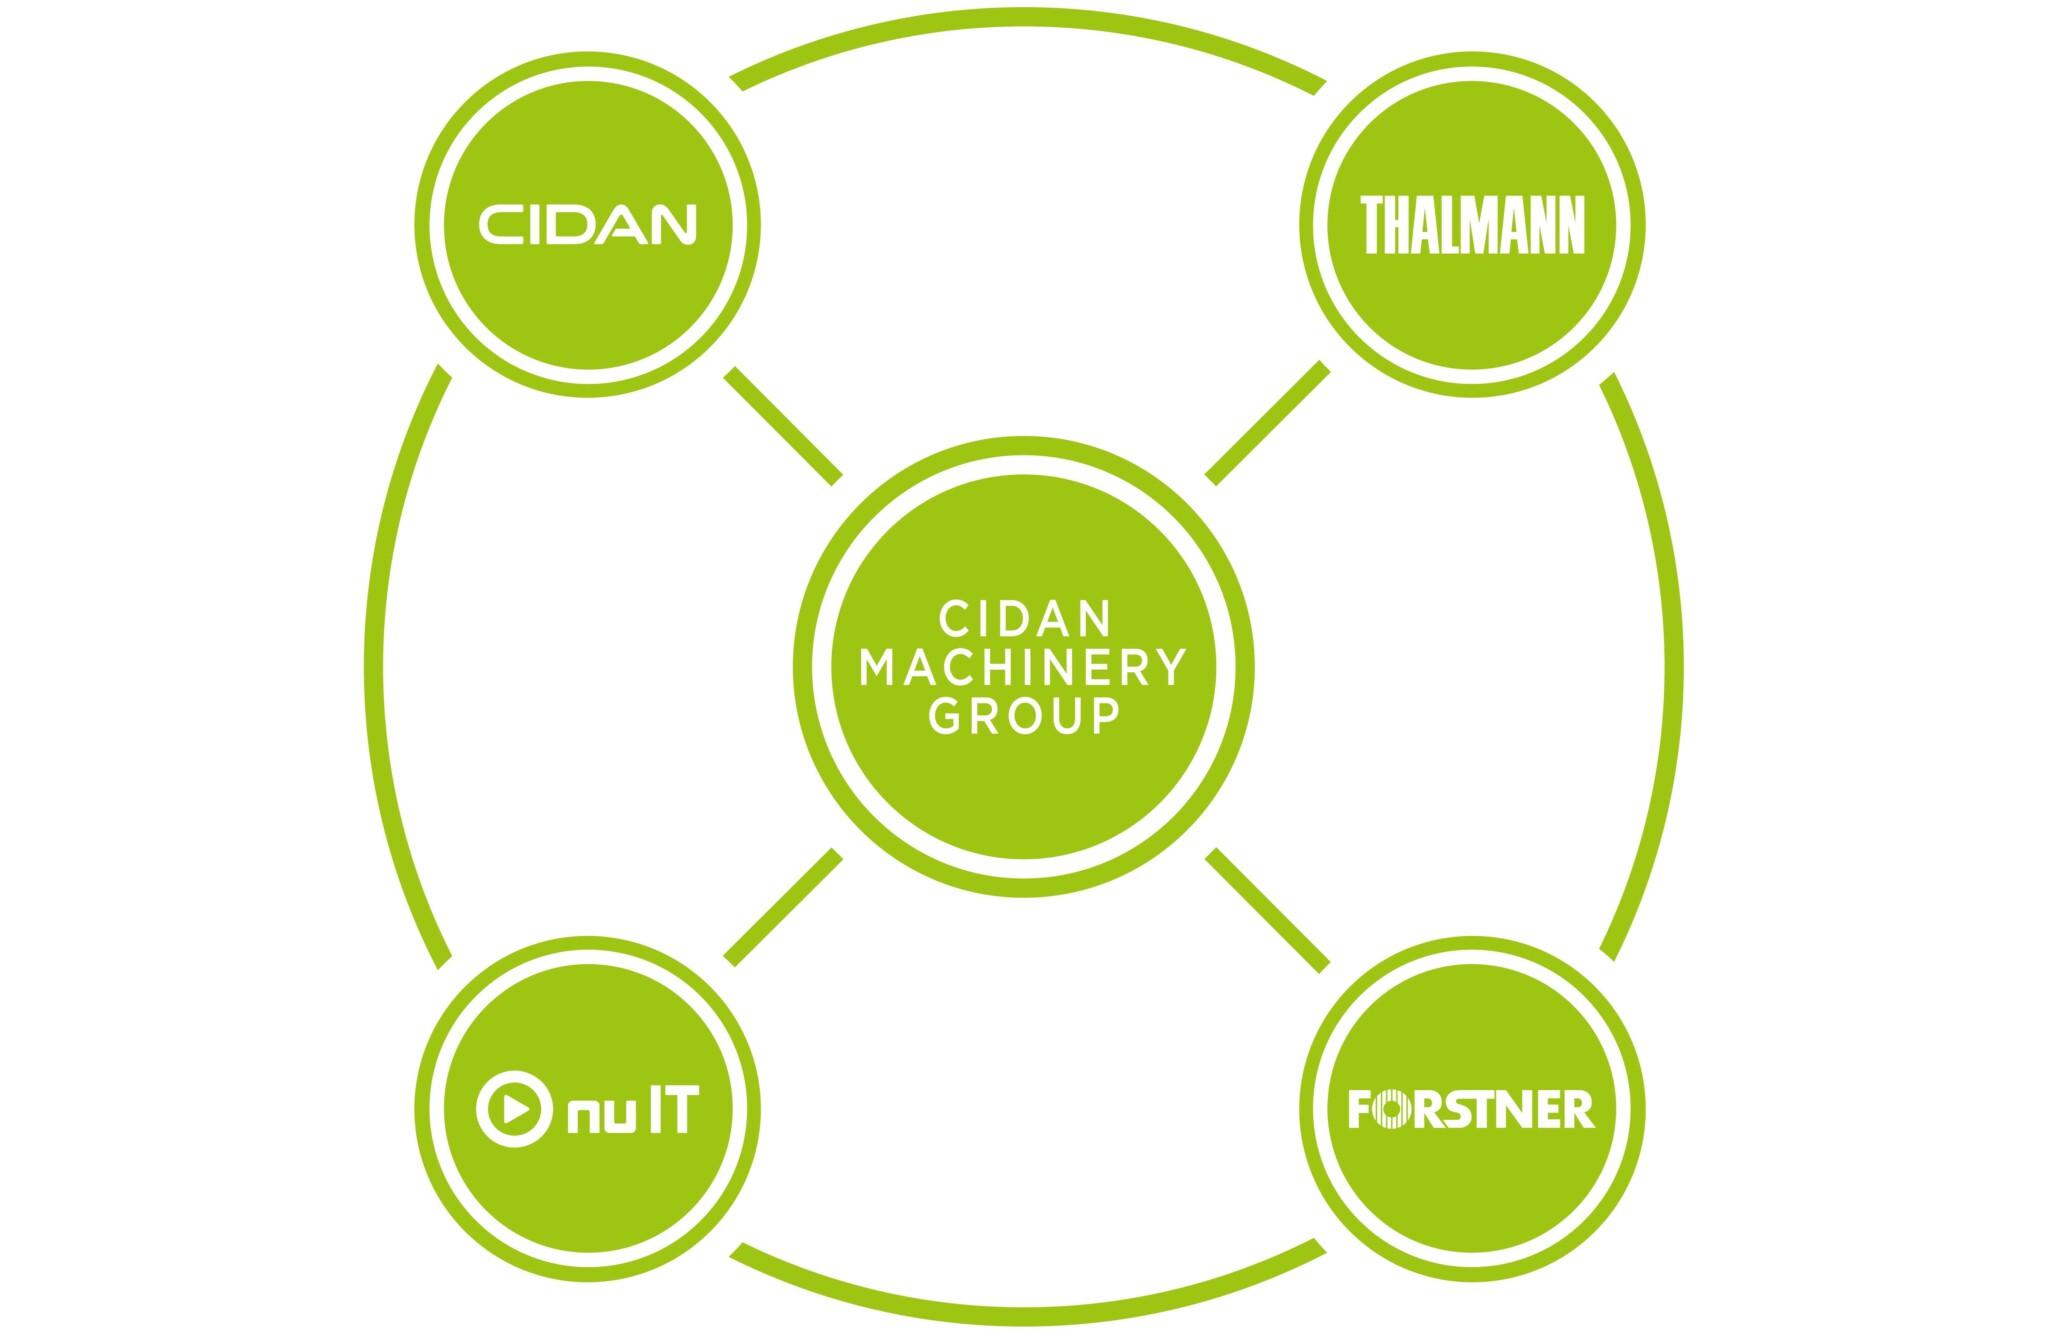 cidan_machinery_group